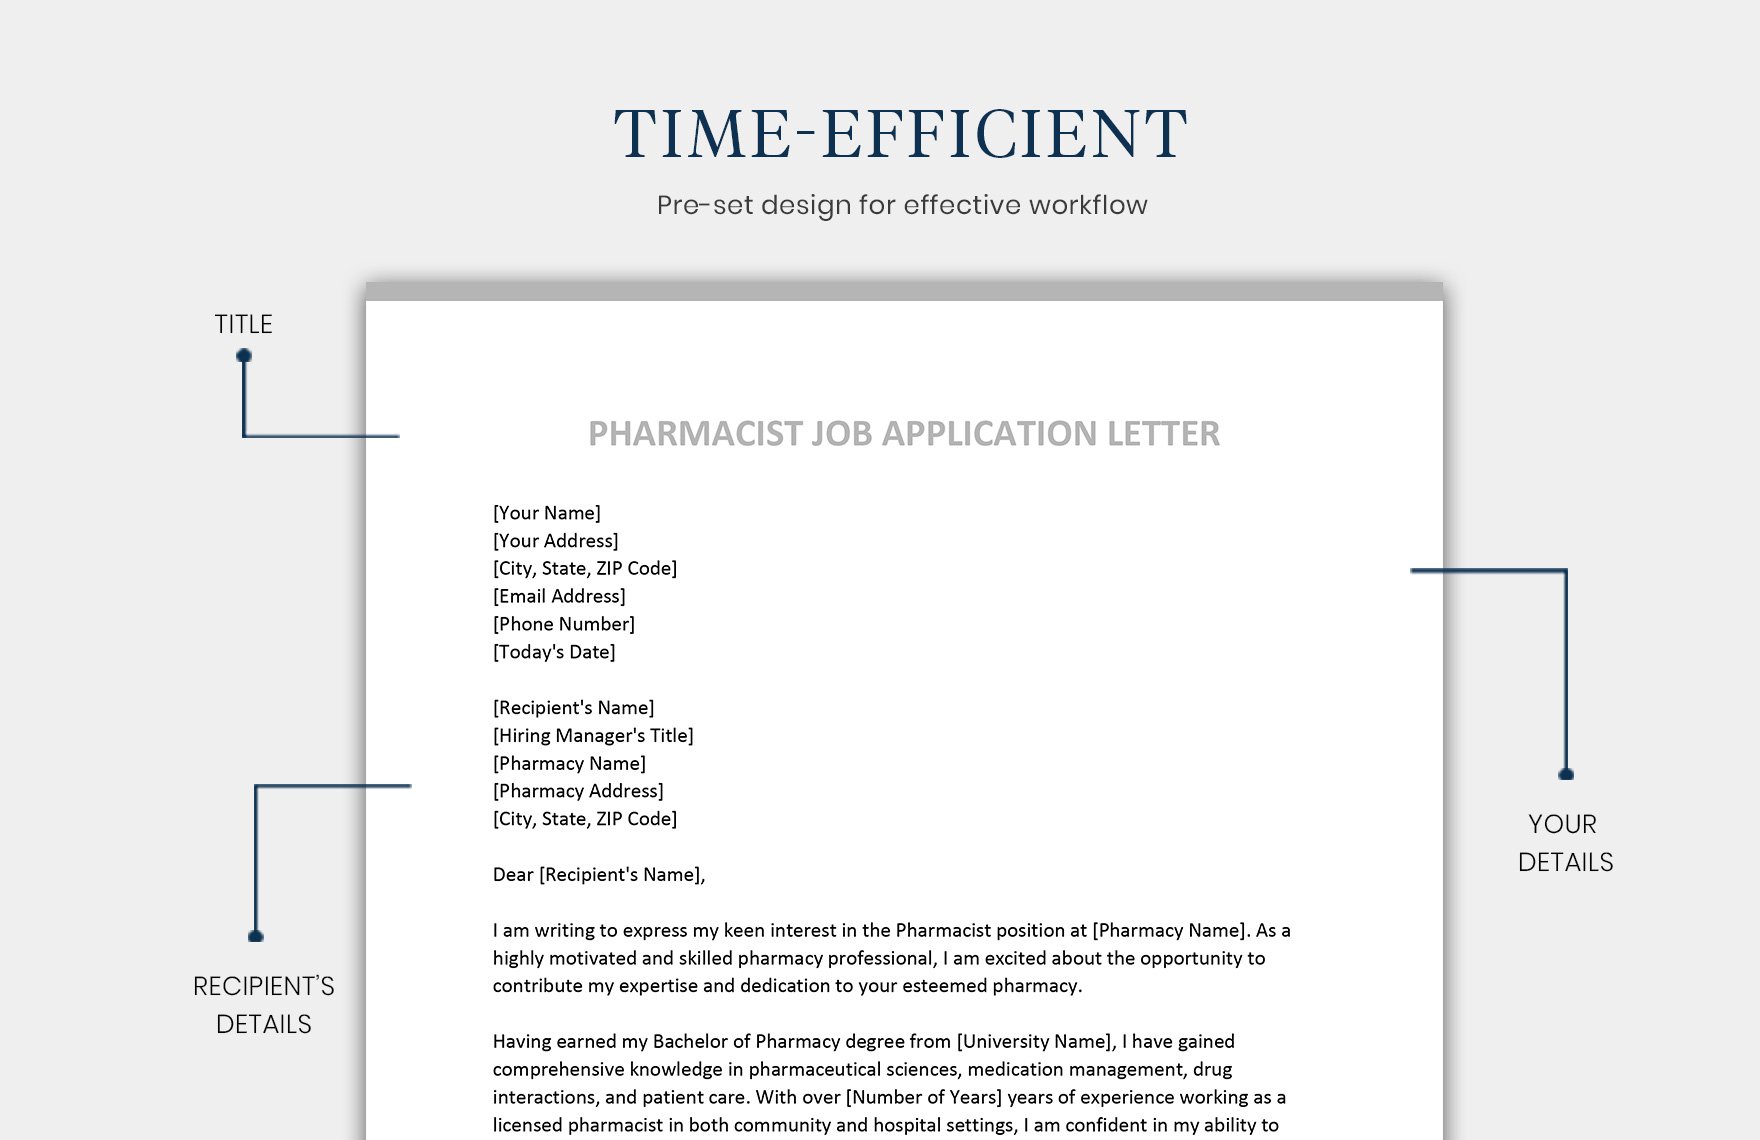 Pharmacist Job Application Letter